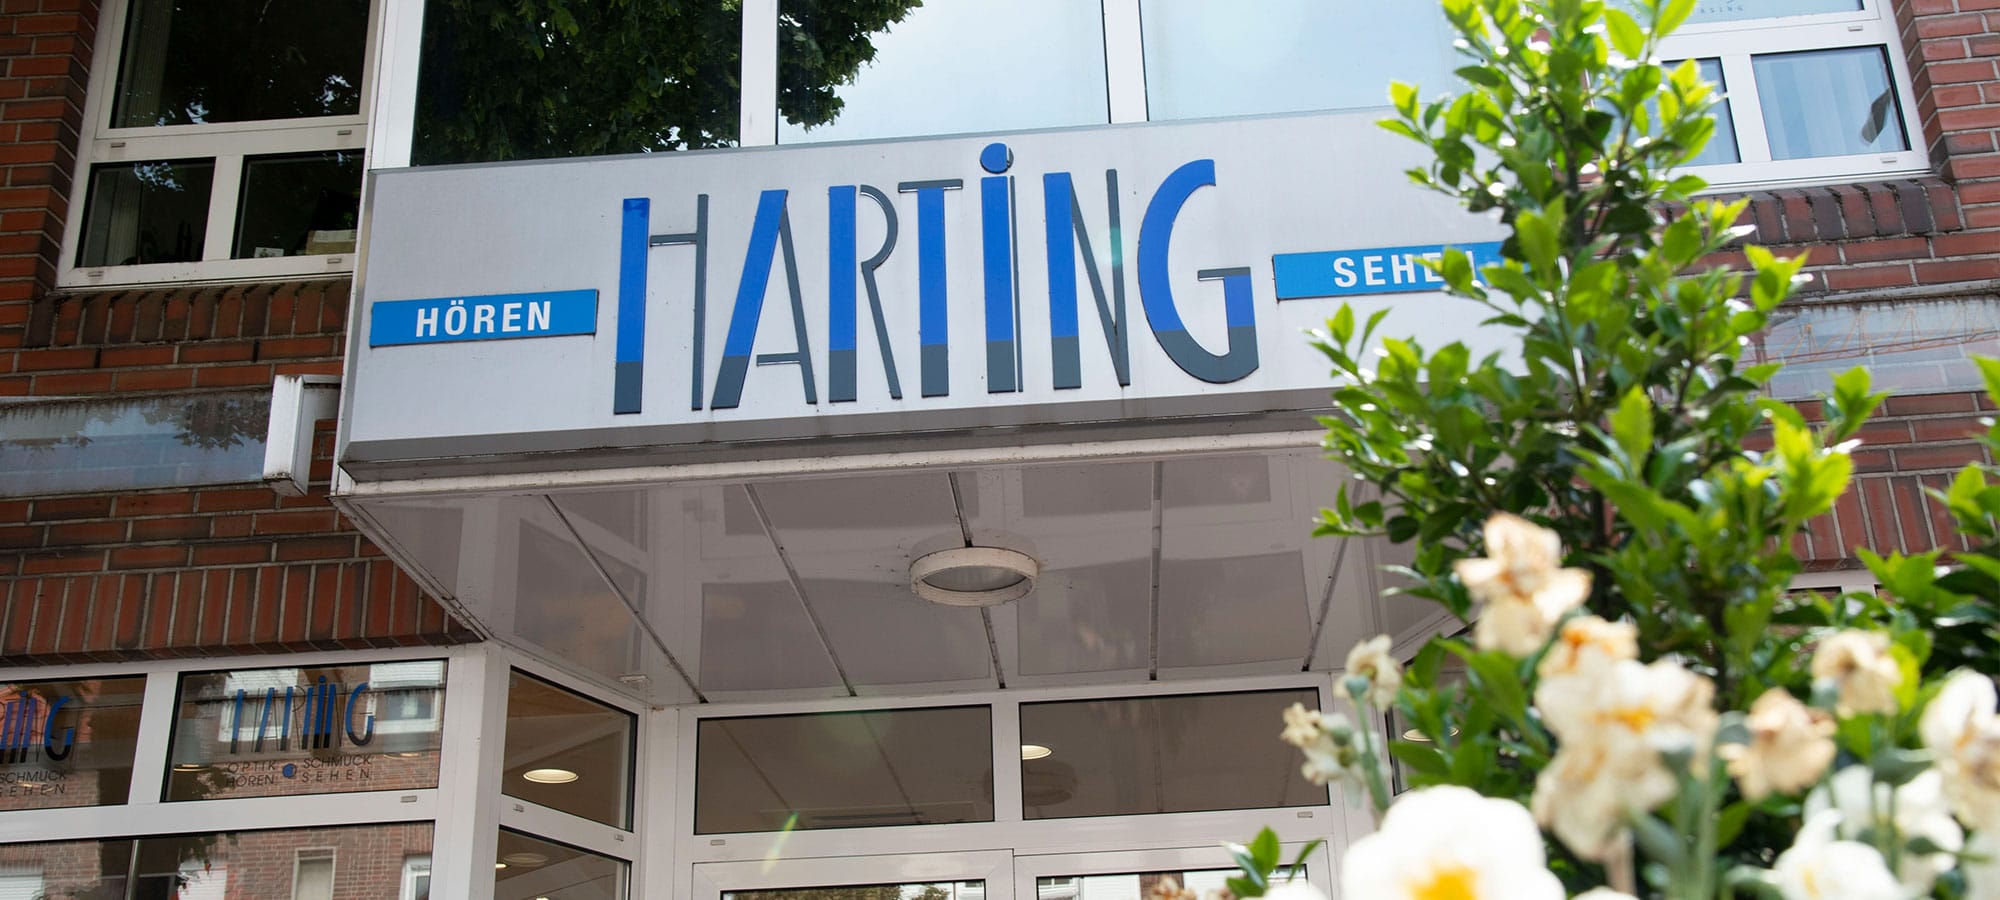 Gebäude von Harting – Außenansicht. Blick nach Oben gerichtet und zeigt den Überstand, wo das Harting Logo angebracht ist.